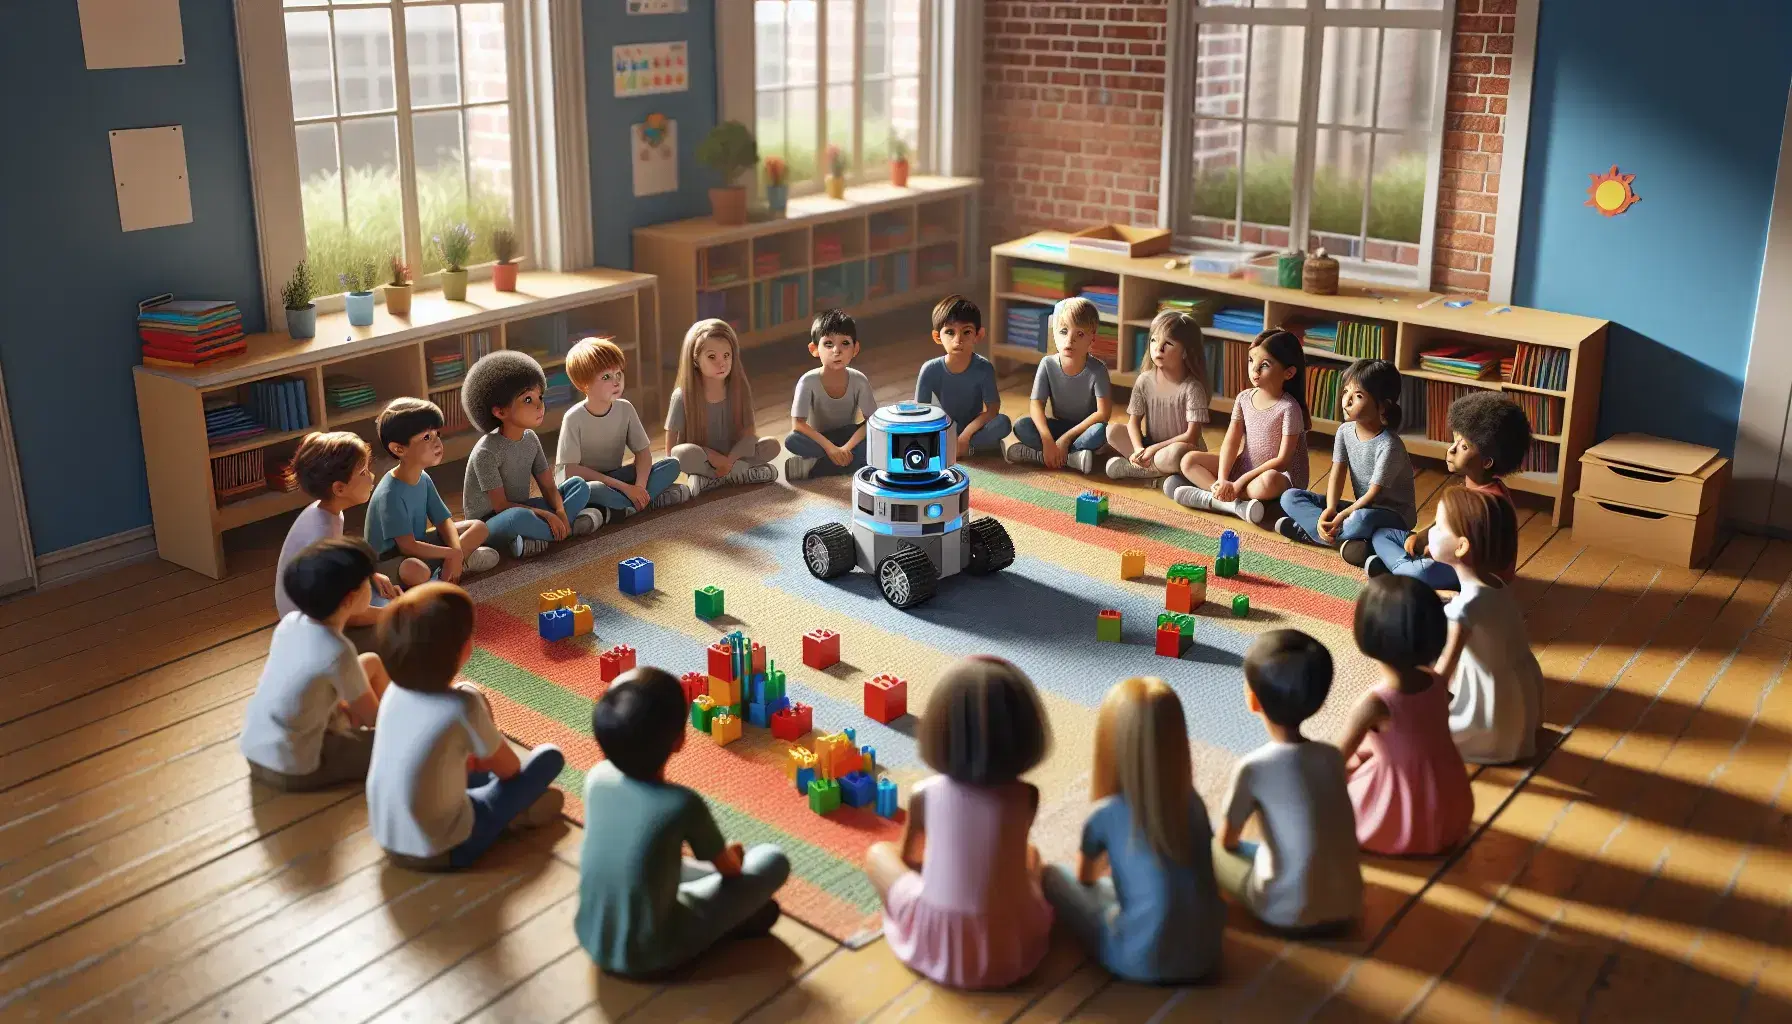 Bambini di diverse etnie seduti in cerchio osservano un robot didattico circondato da blocchi colorati in una luminosa aula scolastica.